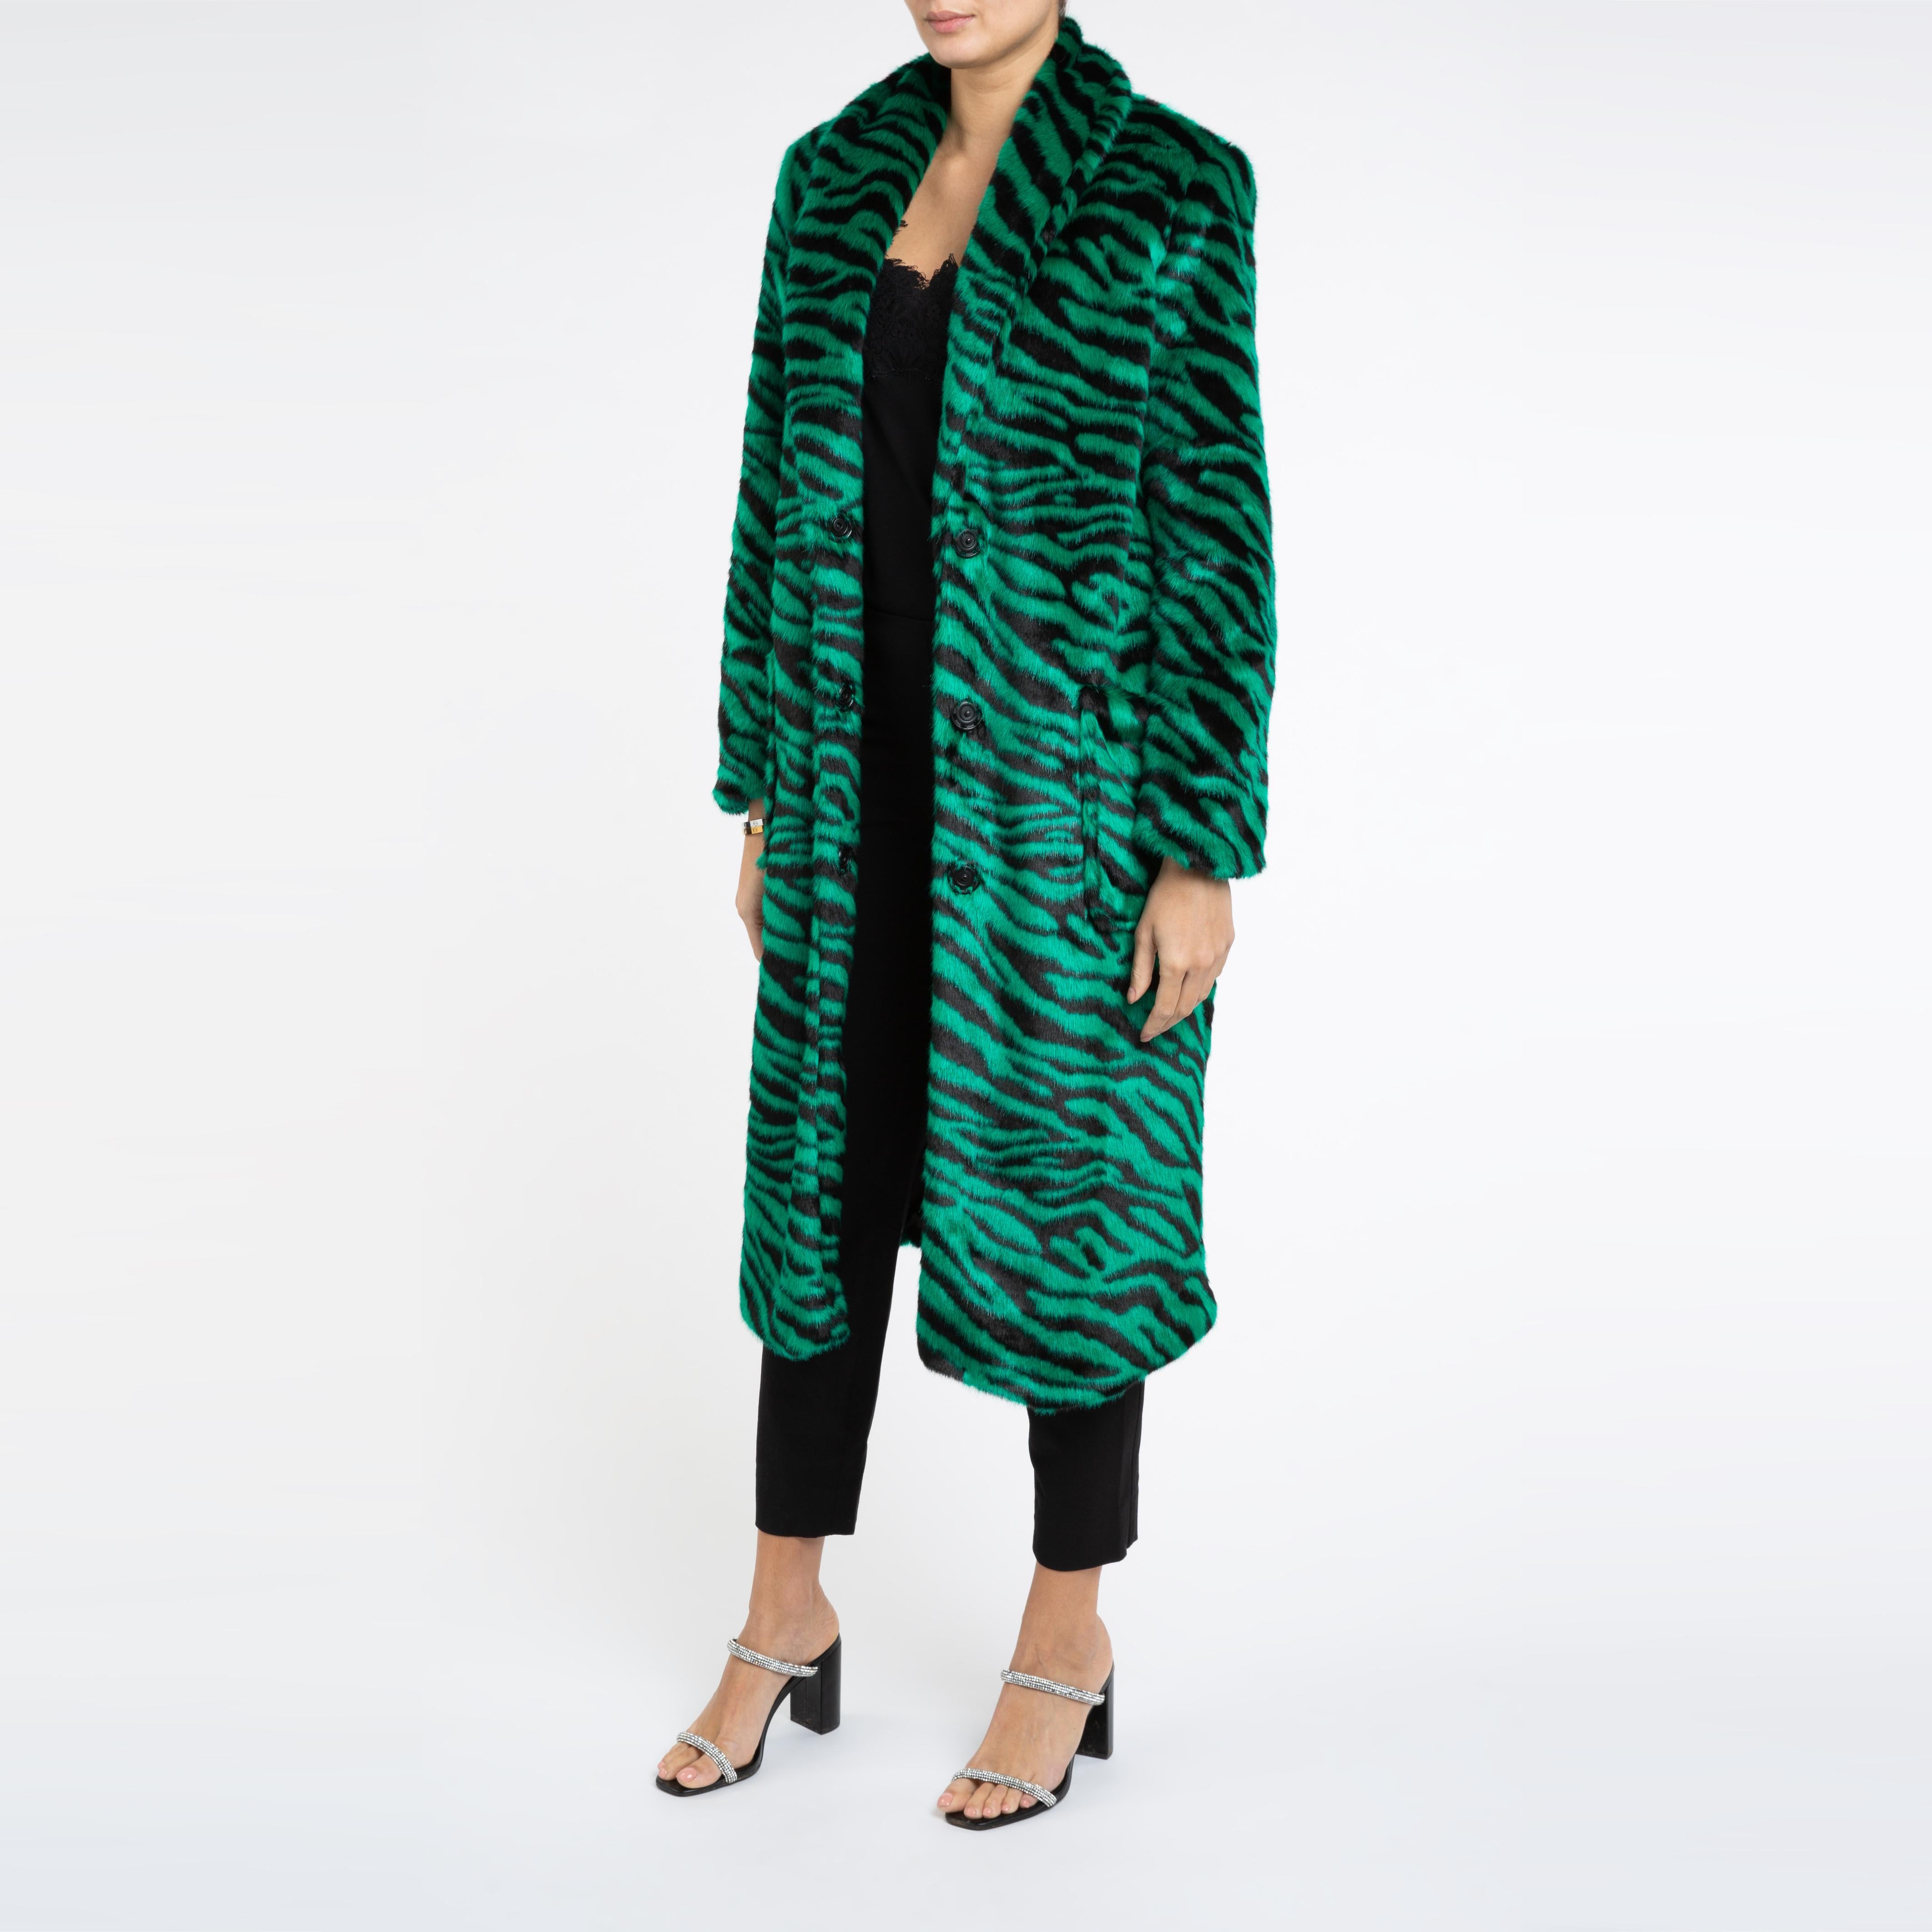 Verheyen London Esmeralda Faux Fur Coat in Emerald Green Zebra Print size uk 8 2